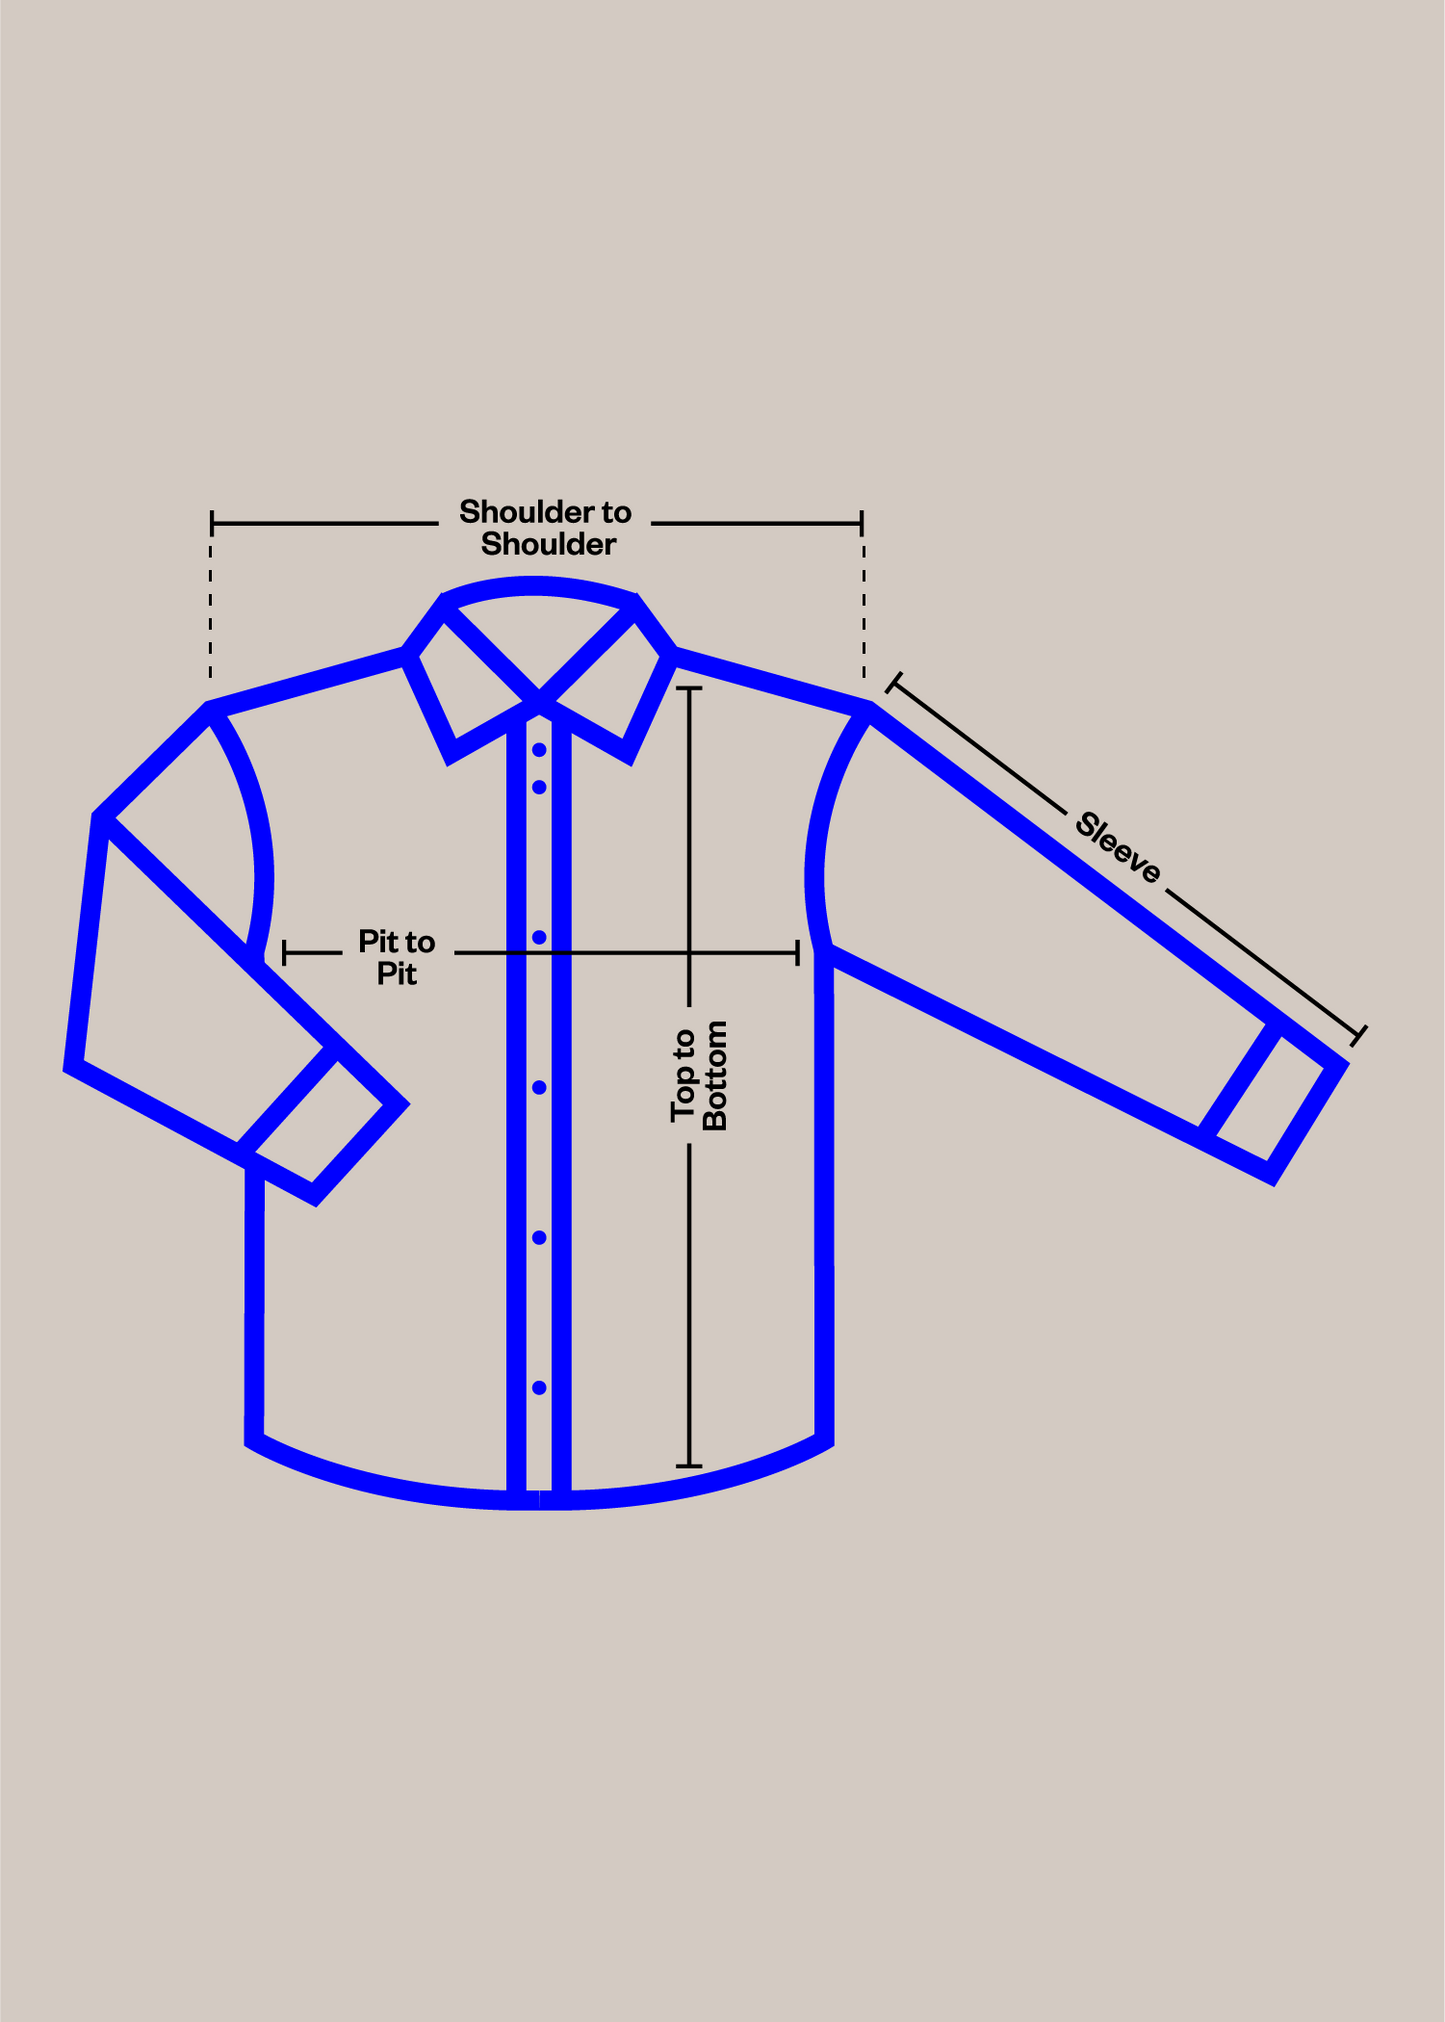 Vintage 1980s Mr. Leggs Cotton Flannel Button Up Shirt Size M/L